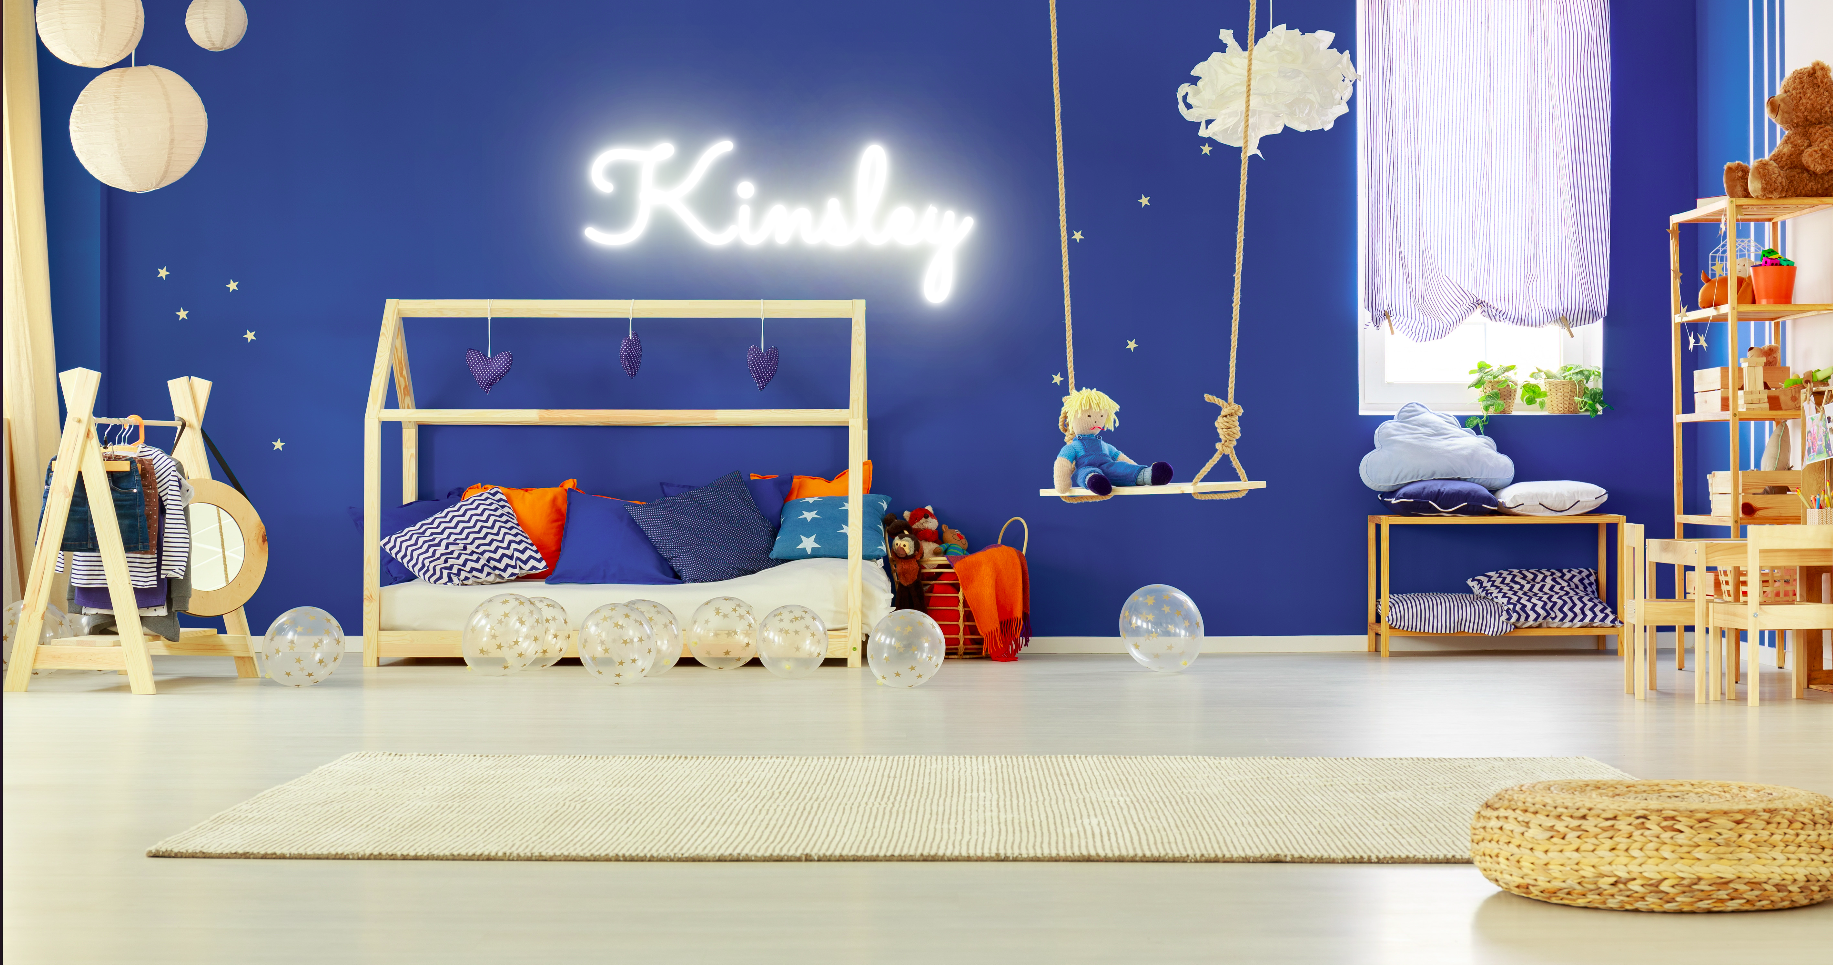 "Kinsley" Baby Name LED Neon Sign